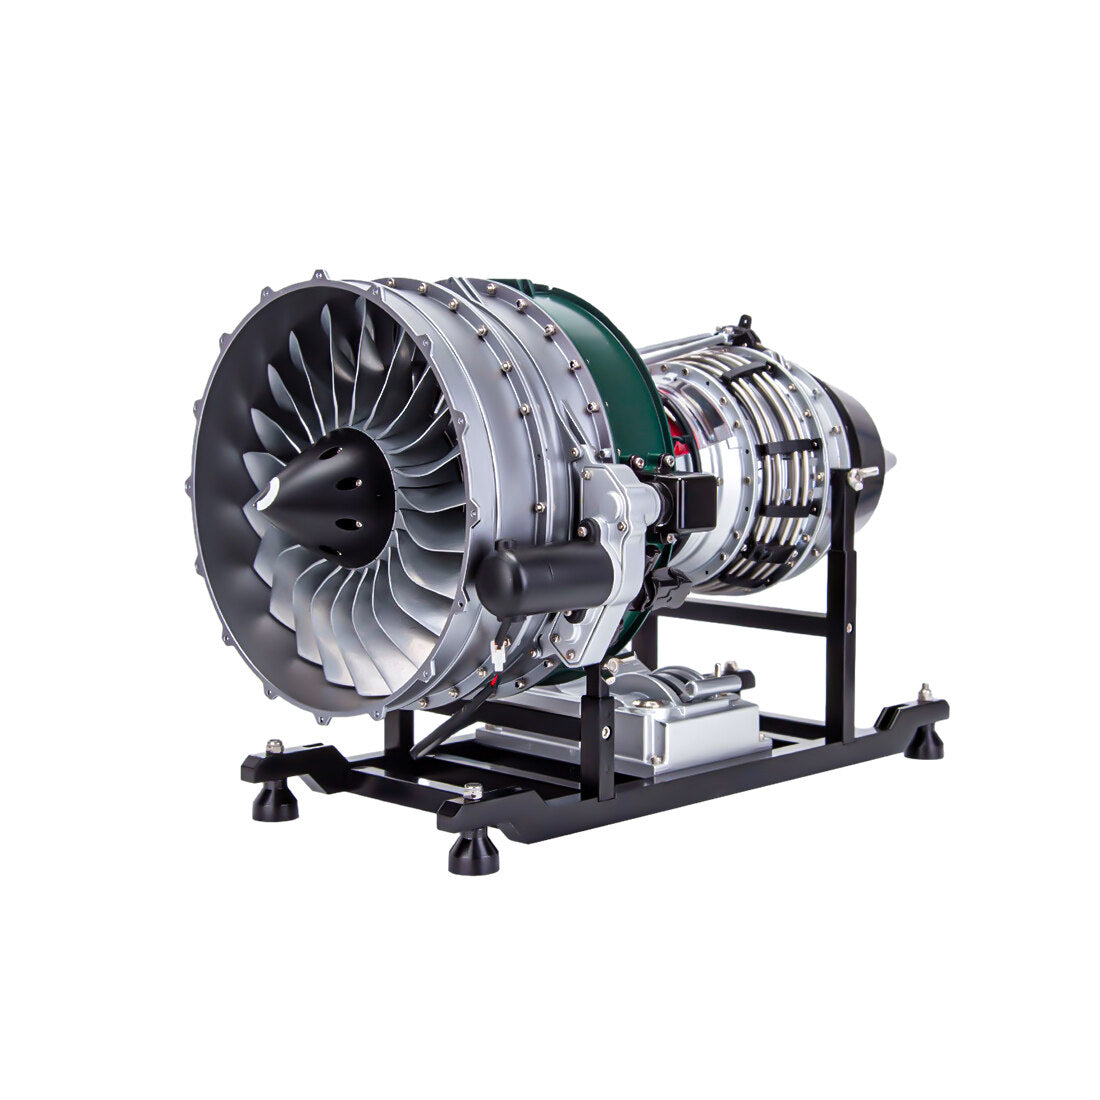 TECHING Modellbausatz für mechanisches Doppelspulen-Turbofan-Triebwerk –  enginediyshop